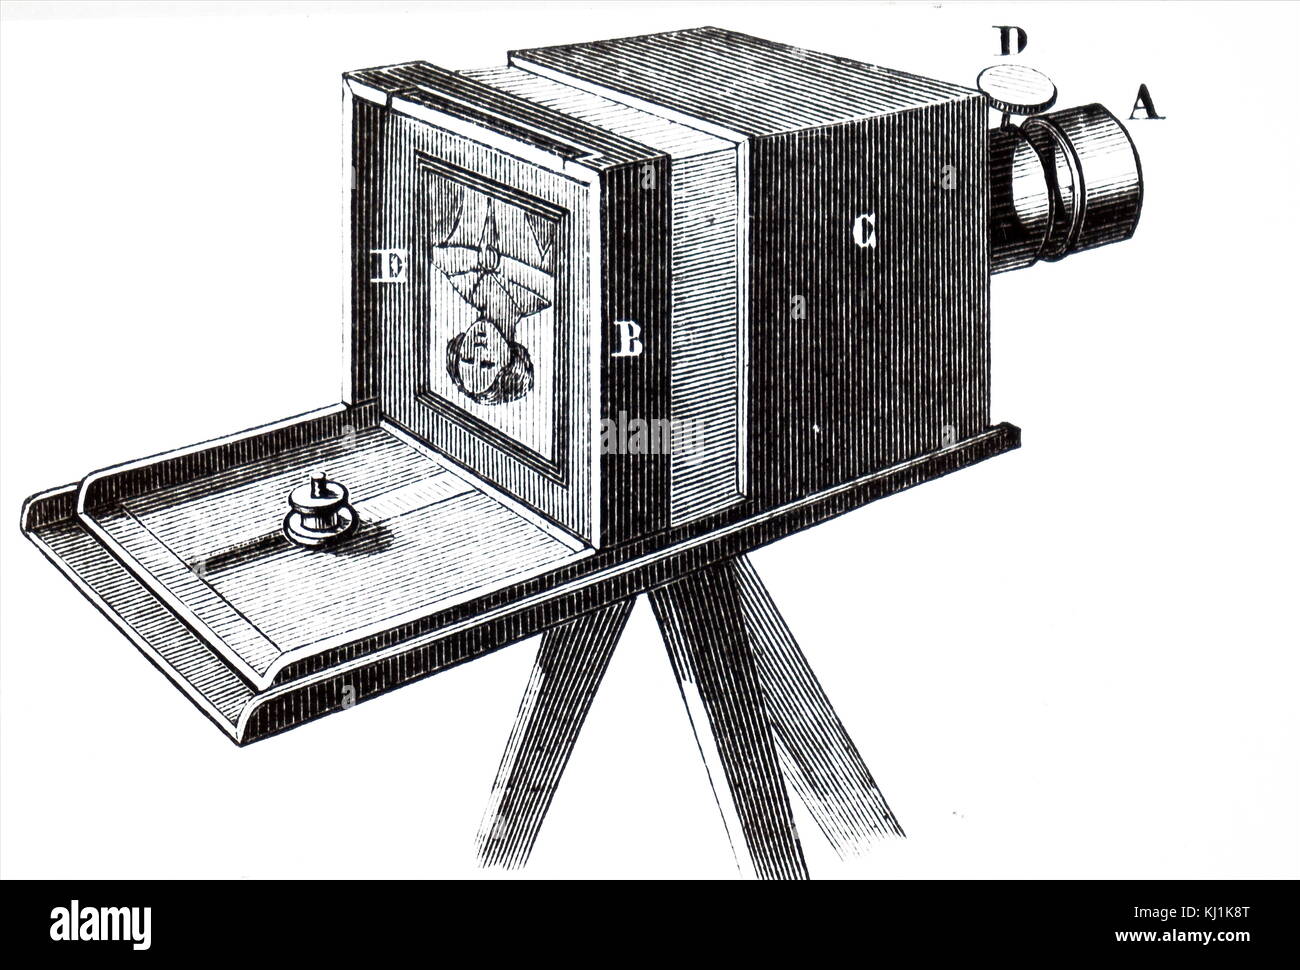 Incisione raffigurante una fotocamera utilizzata per scattare fotografie daguerreotype inventato da Louis Daguerre. Louis Daguerre (1787-1851) un artista francese, inventore e fotografo. Datata del XIX secolo Foto Stock